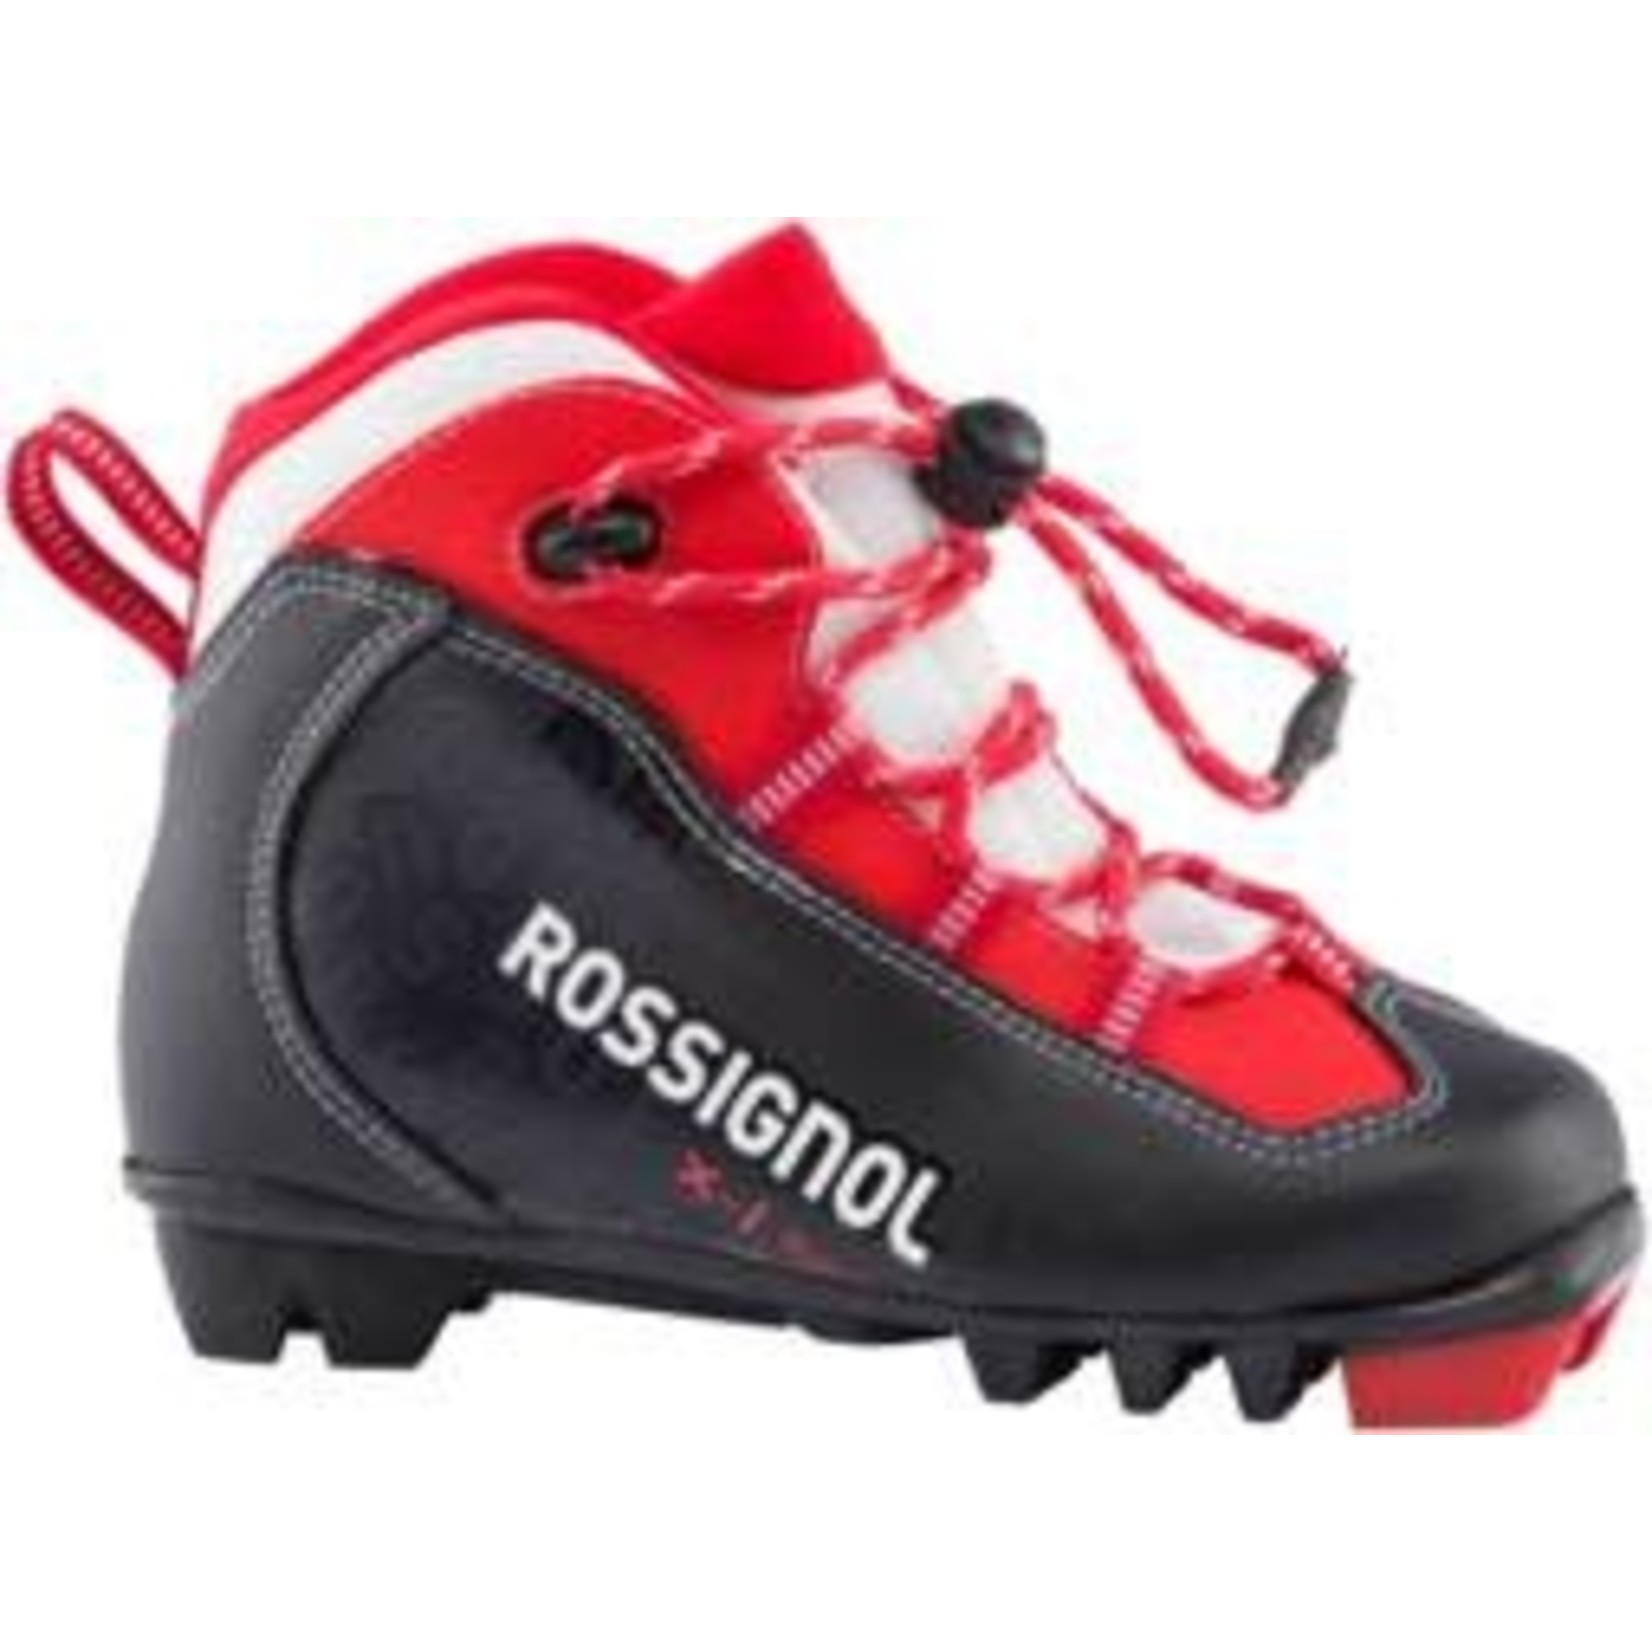 ROSSIGNOL Rossignol X1 junior XC Ski Boot